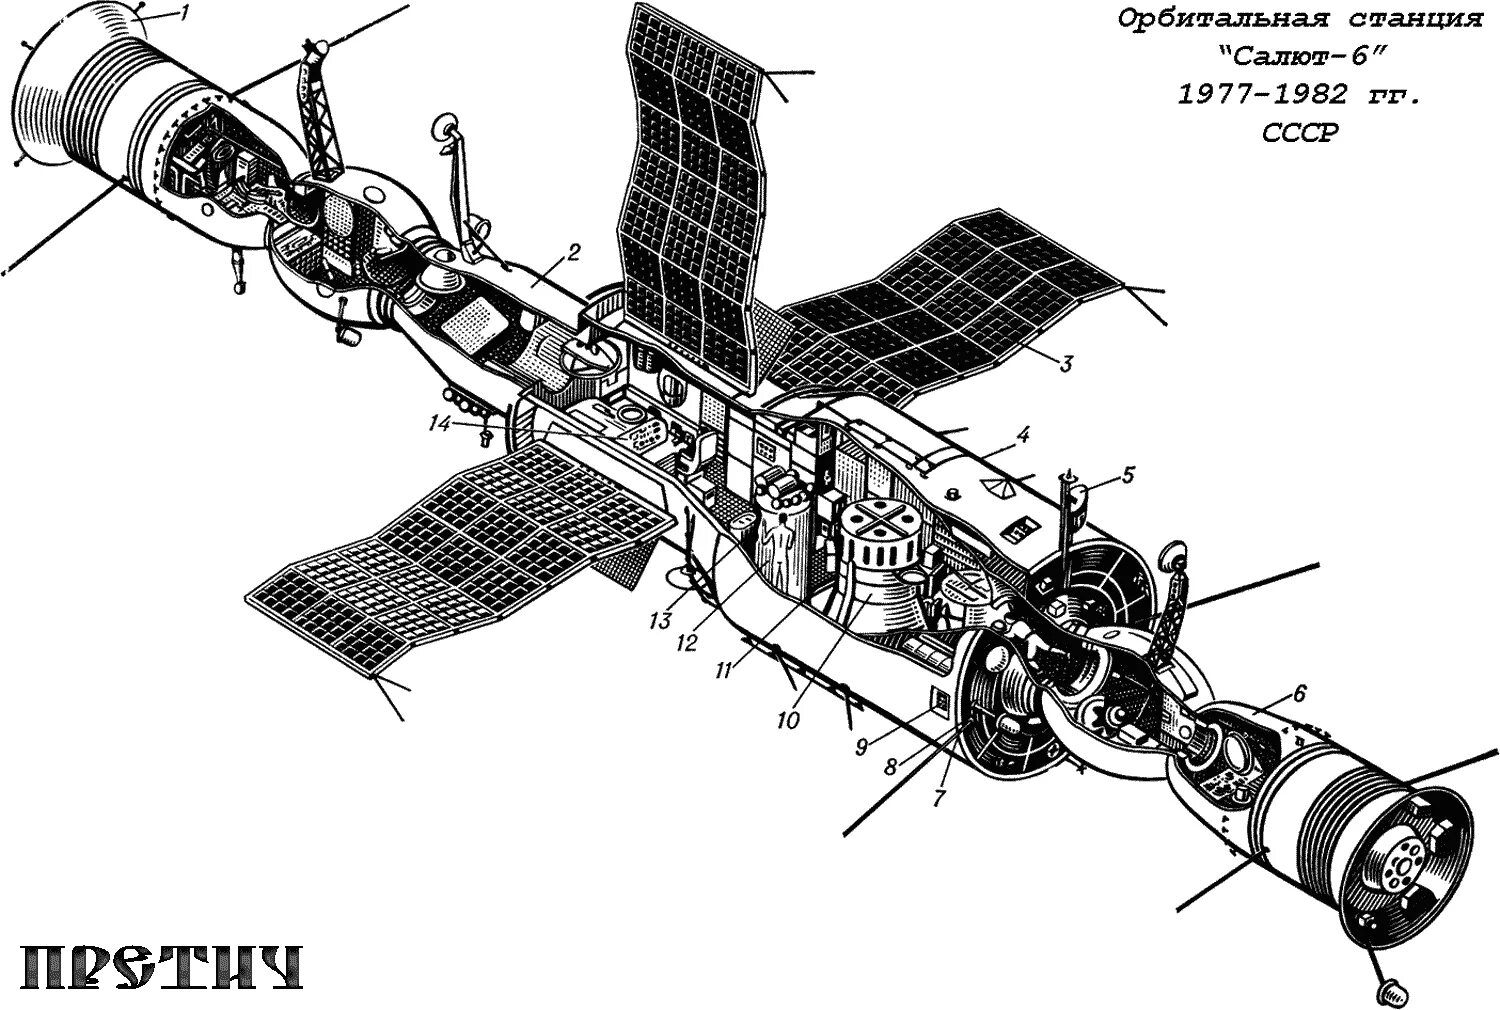 Первая космическая станция салют 1. Салют-1 орбитальная станция. Салют-2 орбитальная станция. Салют-6 орбитальная станция. Околоземная станция "салют 1" чертеж.